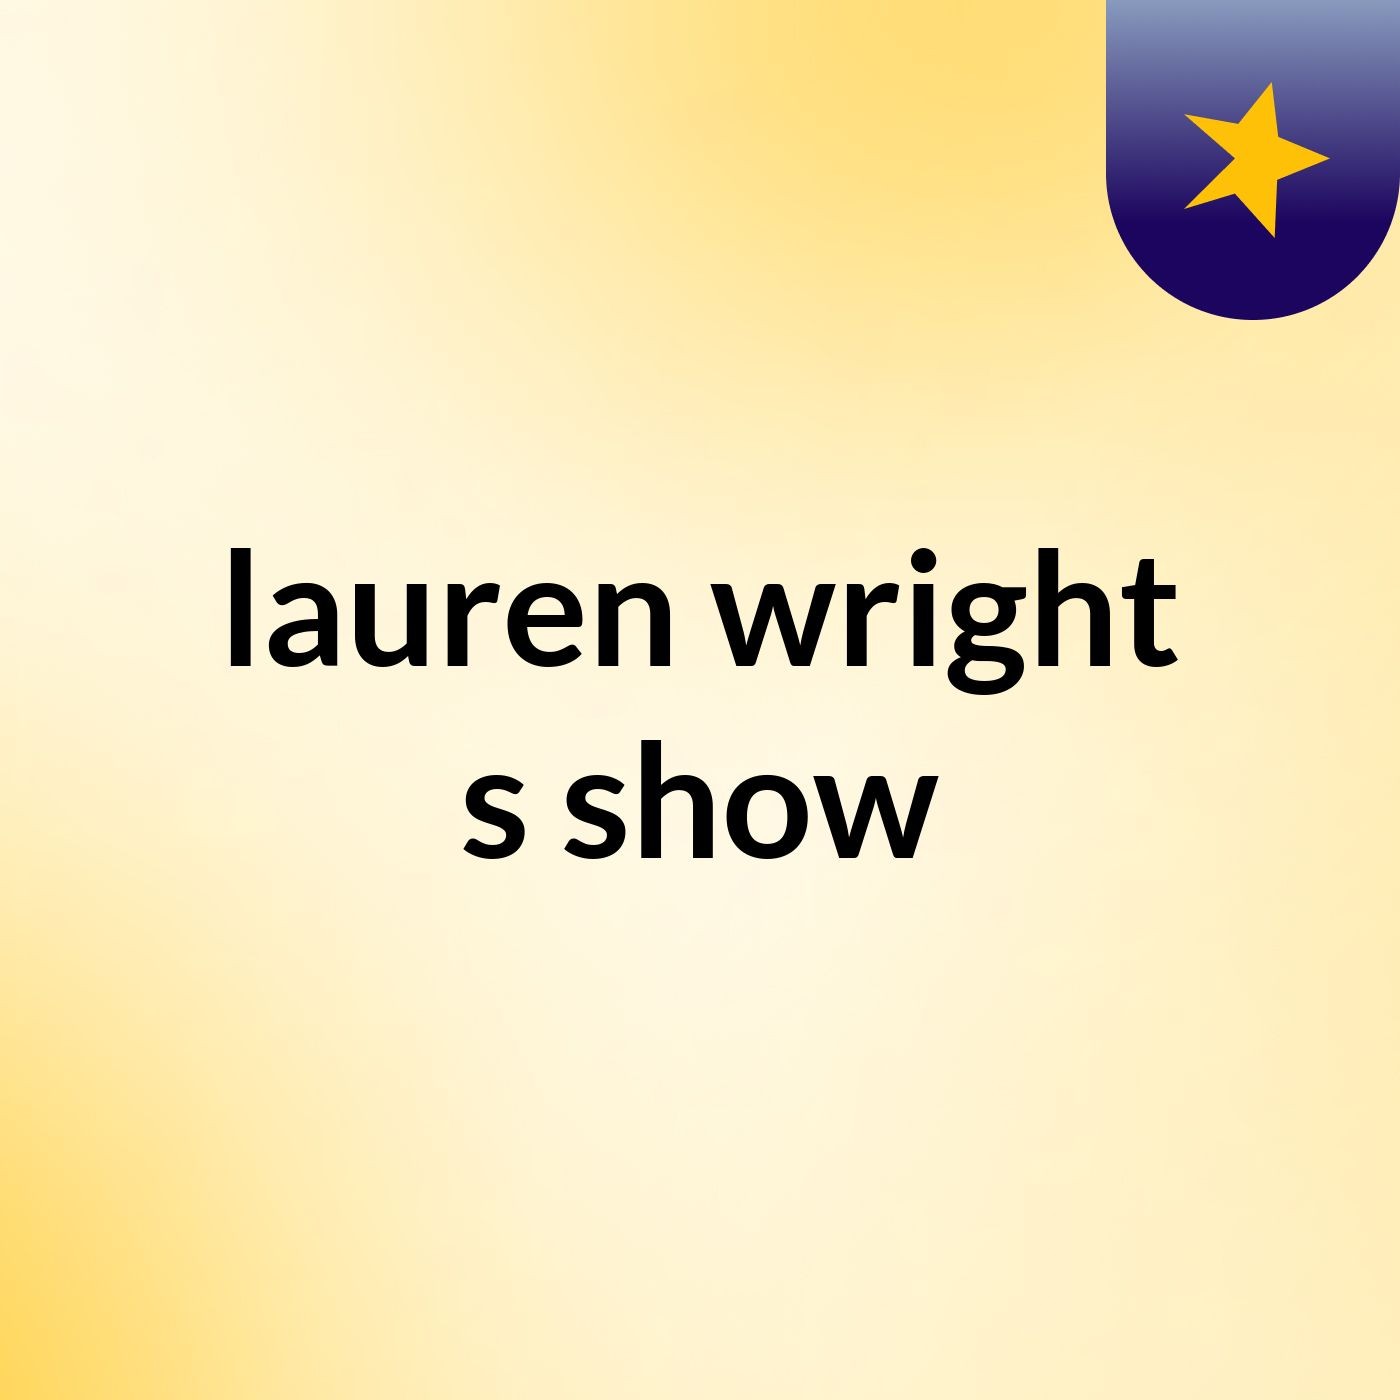 lauren wright's show